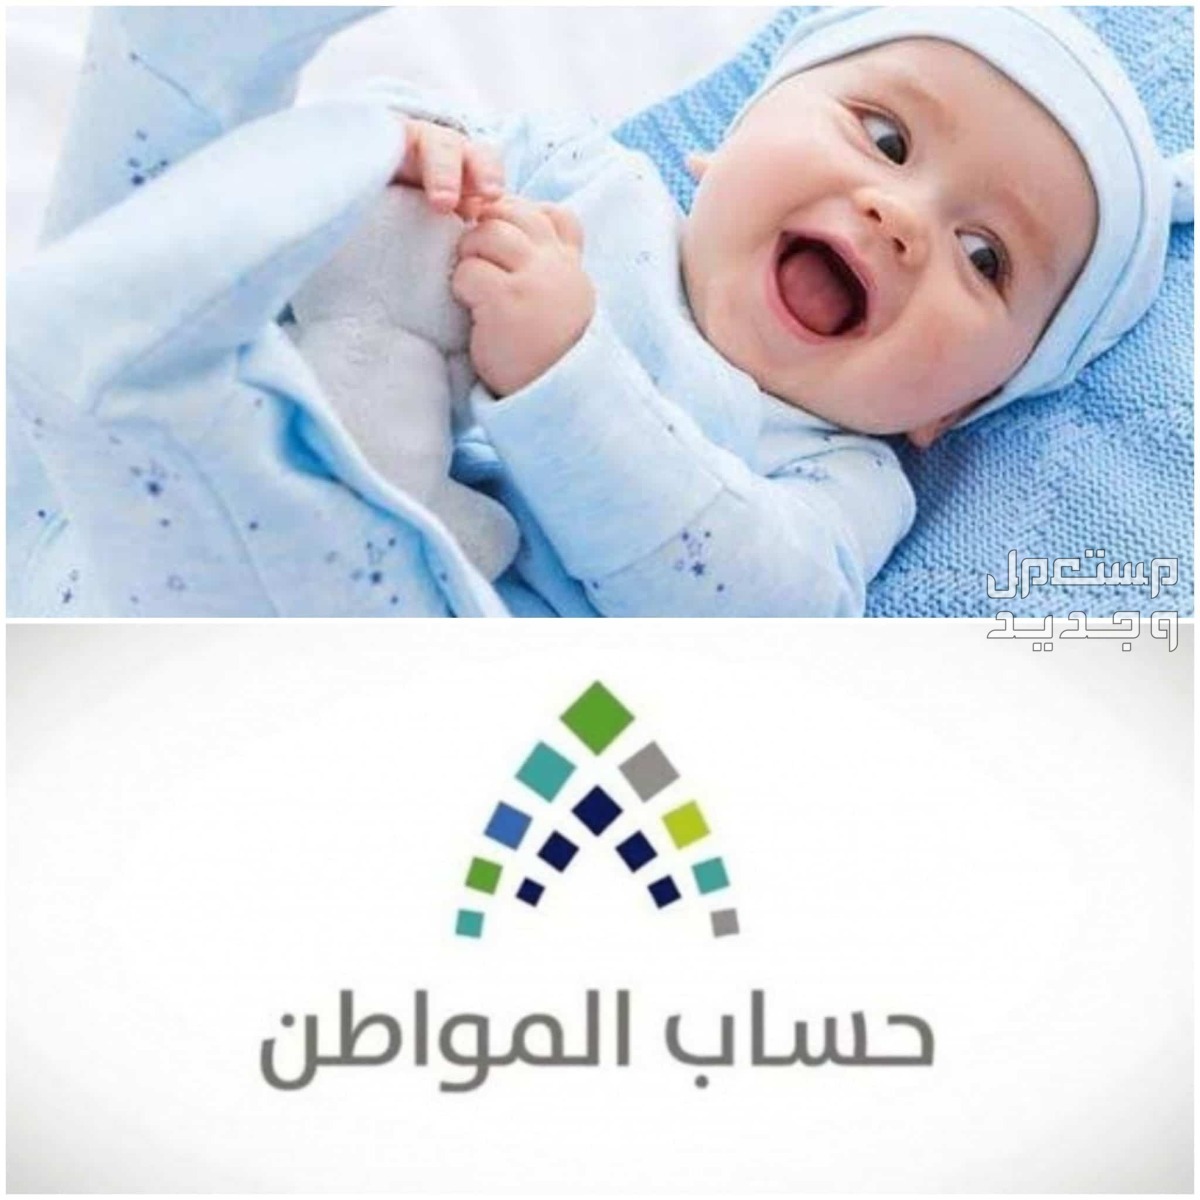 طريقة تسجيل المولود الجديد في حساب المواطن 1445 في الجزائر تسجيل المولود الجديد في حساب المواطن